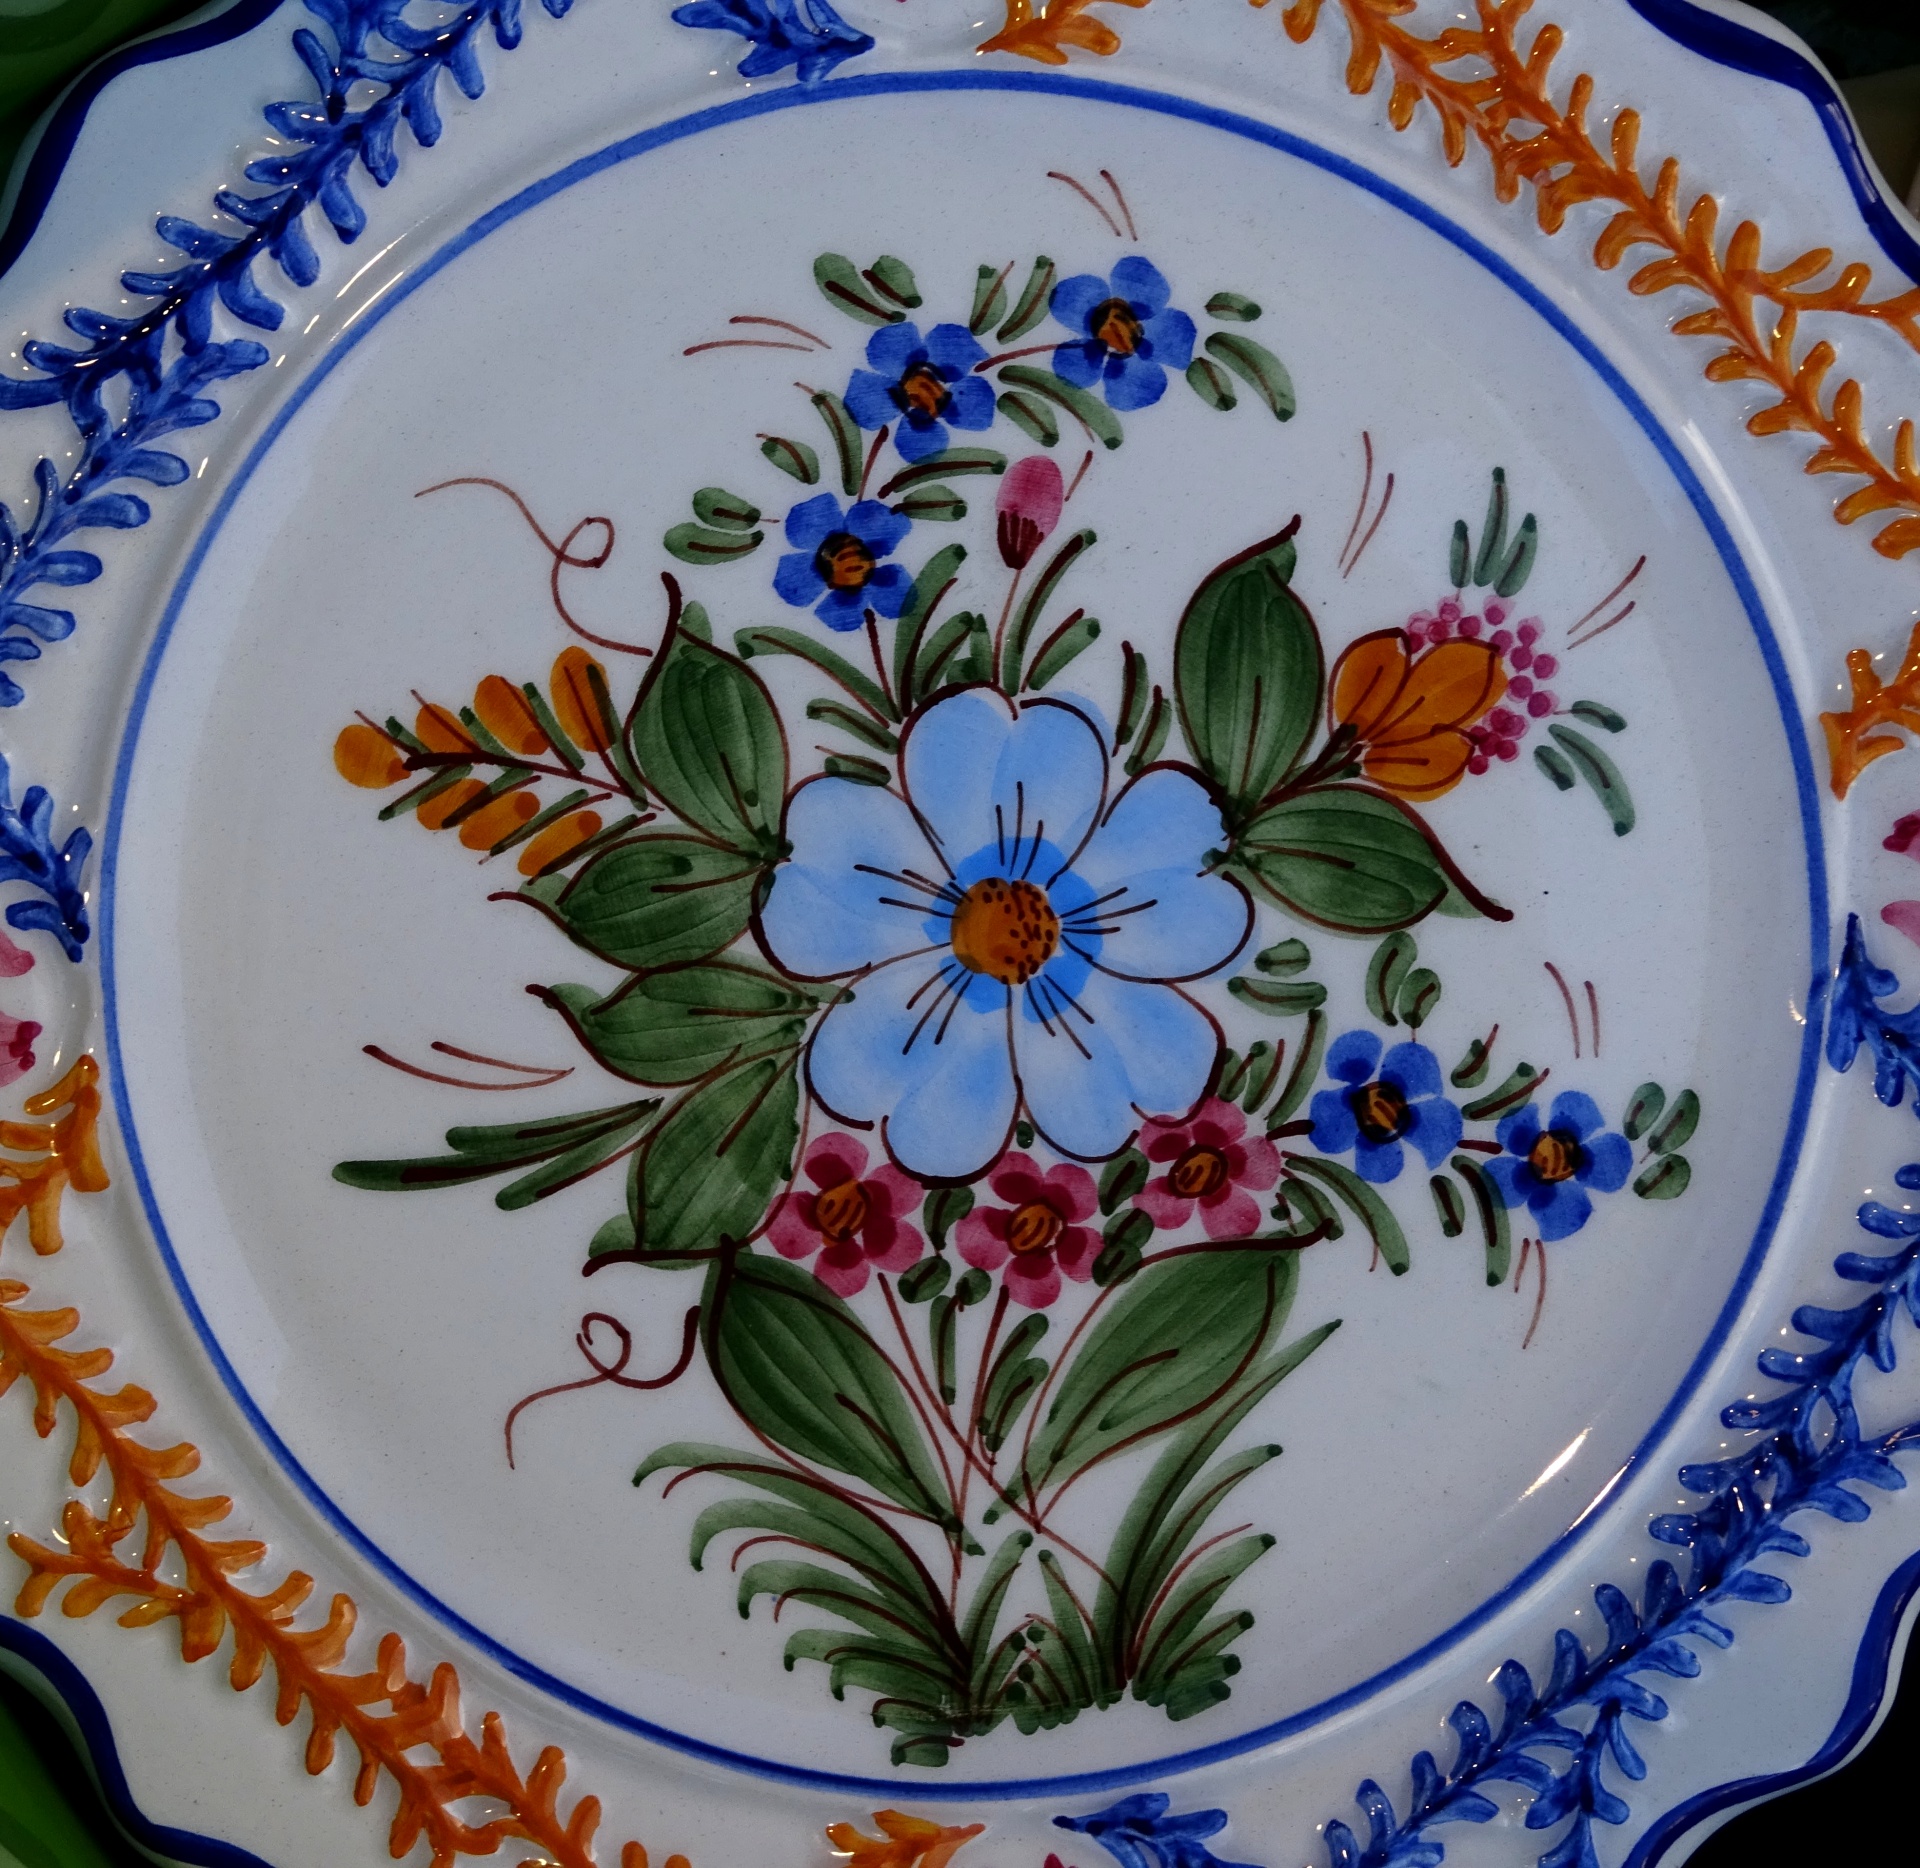 Floral Plate Design